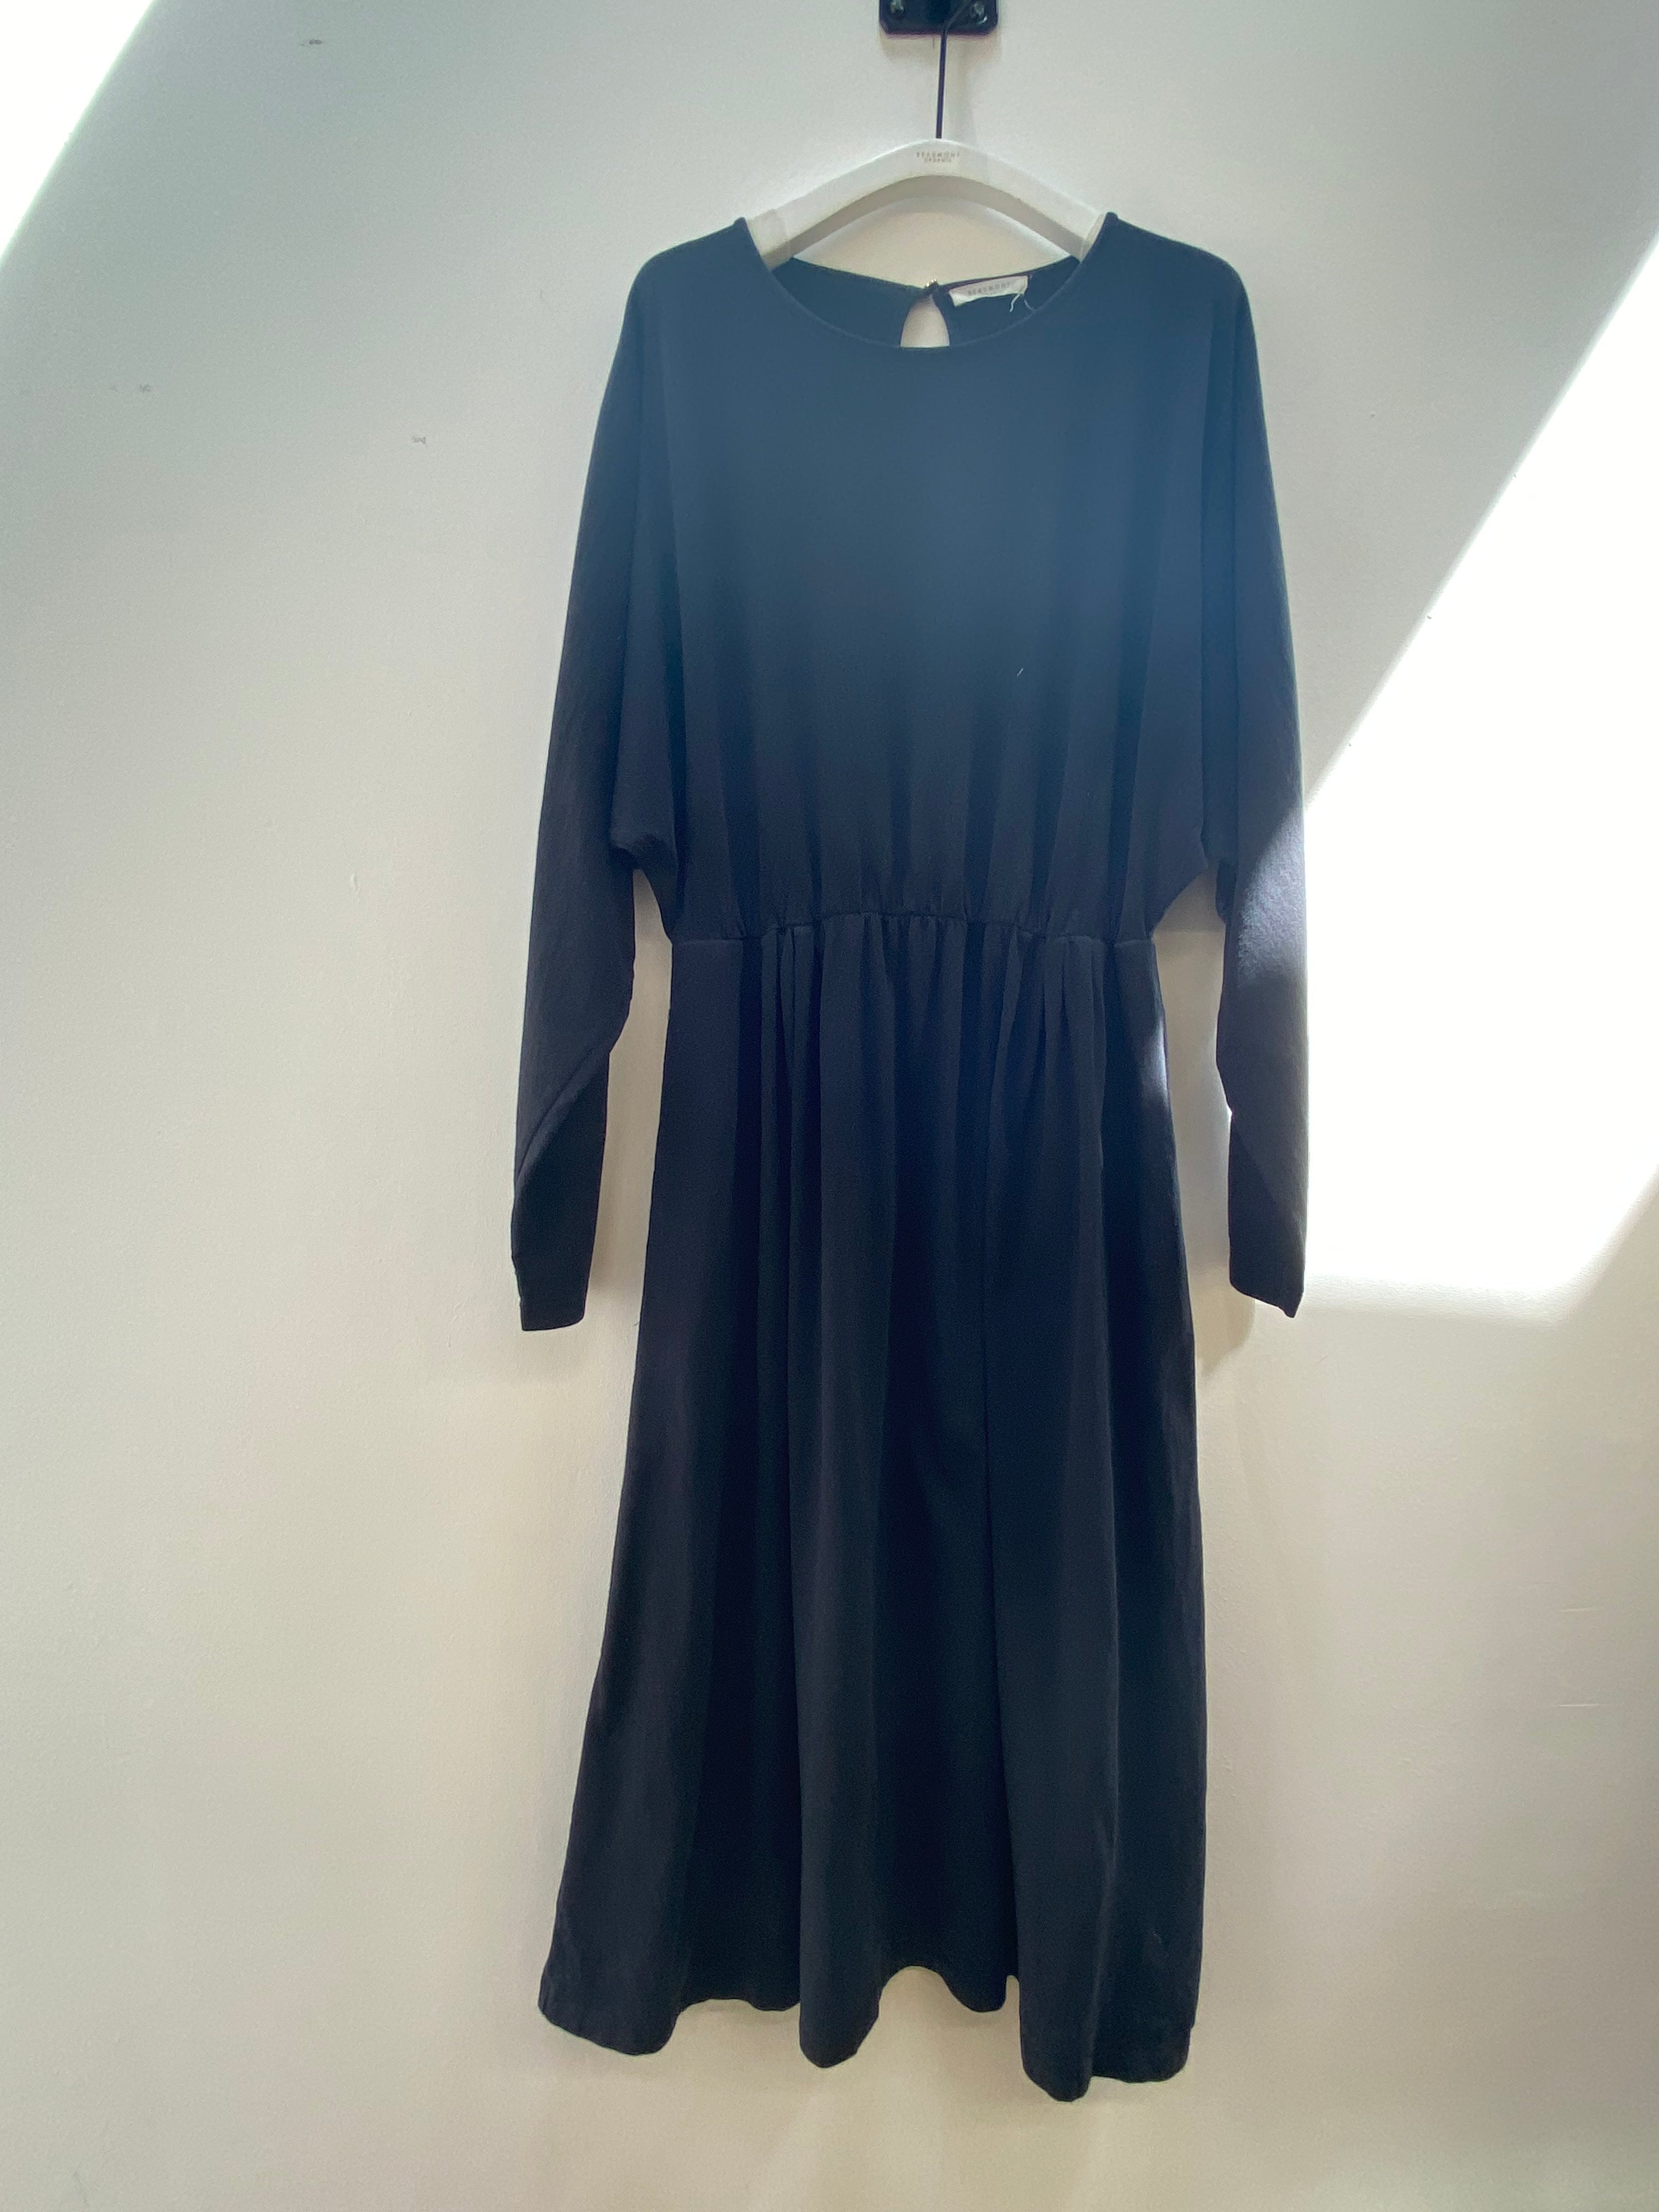 Talita Dress in Black Size S